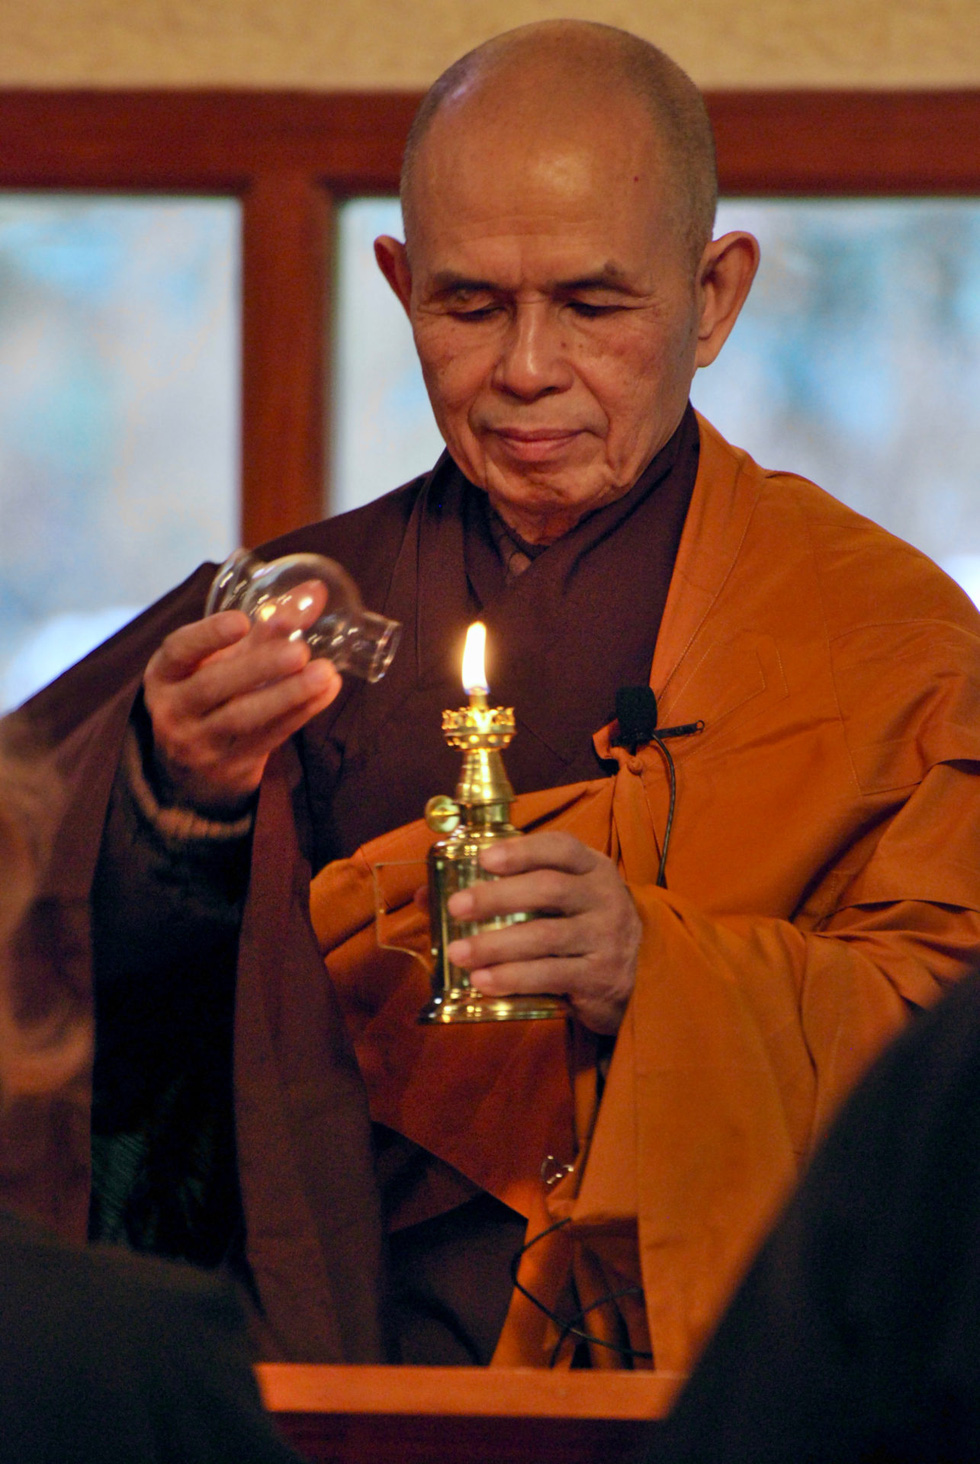 Thiền sư Thích Nhất Hạnh sinh năm 1926 tại Thừa Thiên - Huế với tên khai sinh là Nguyễn Xuân Bảo